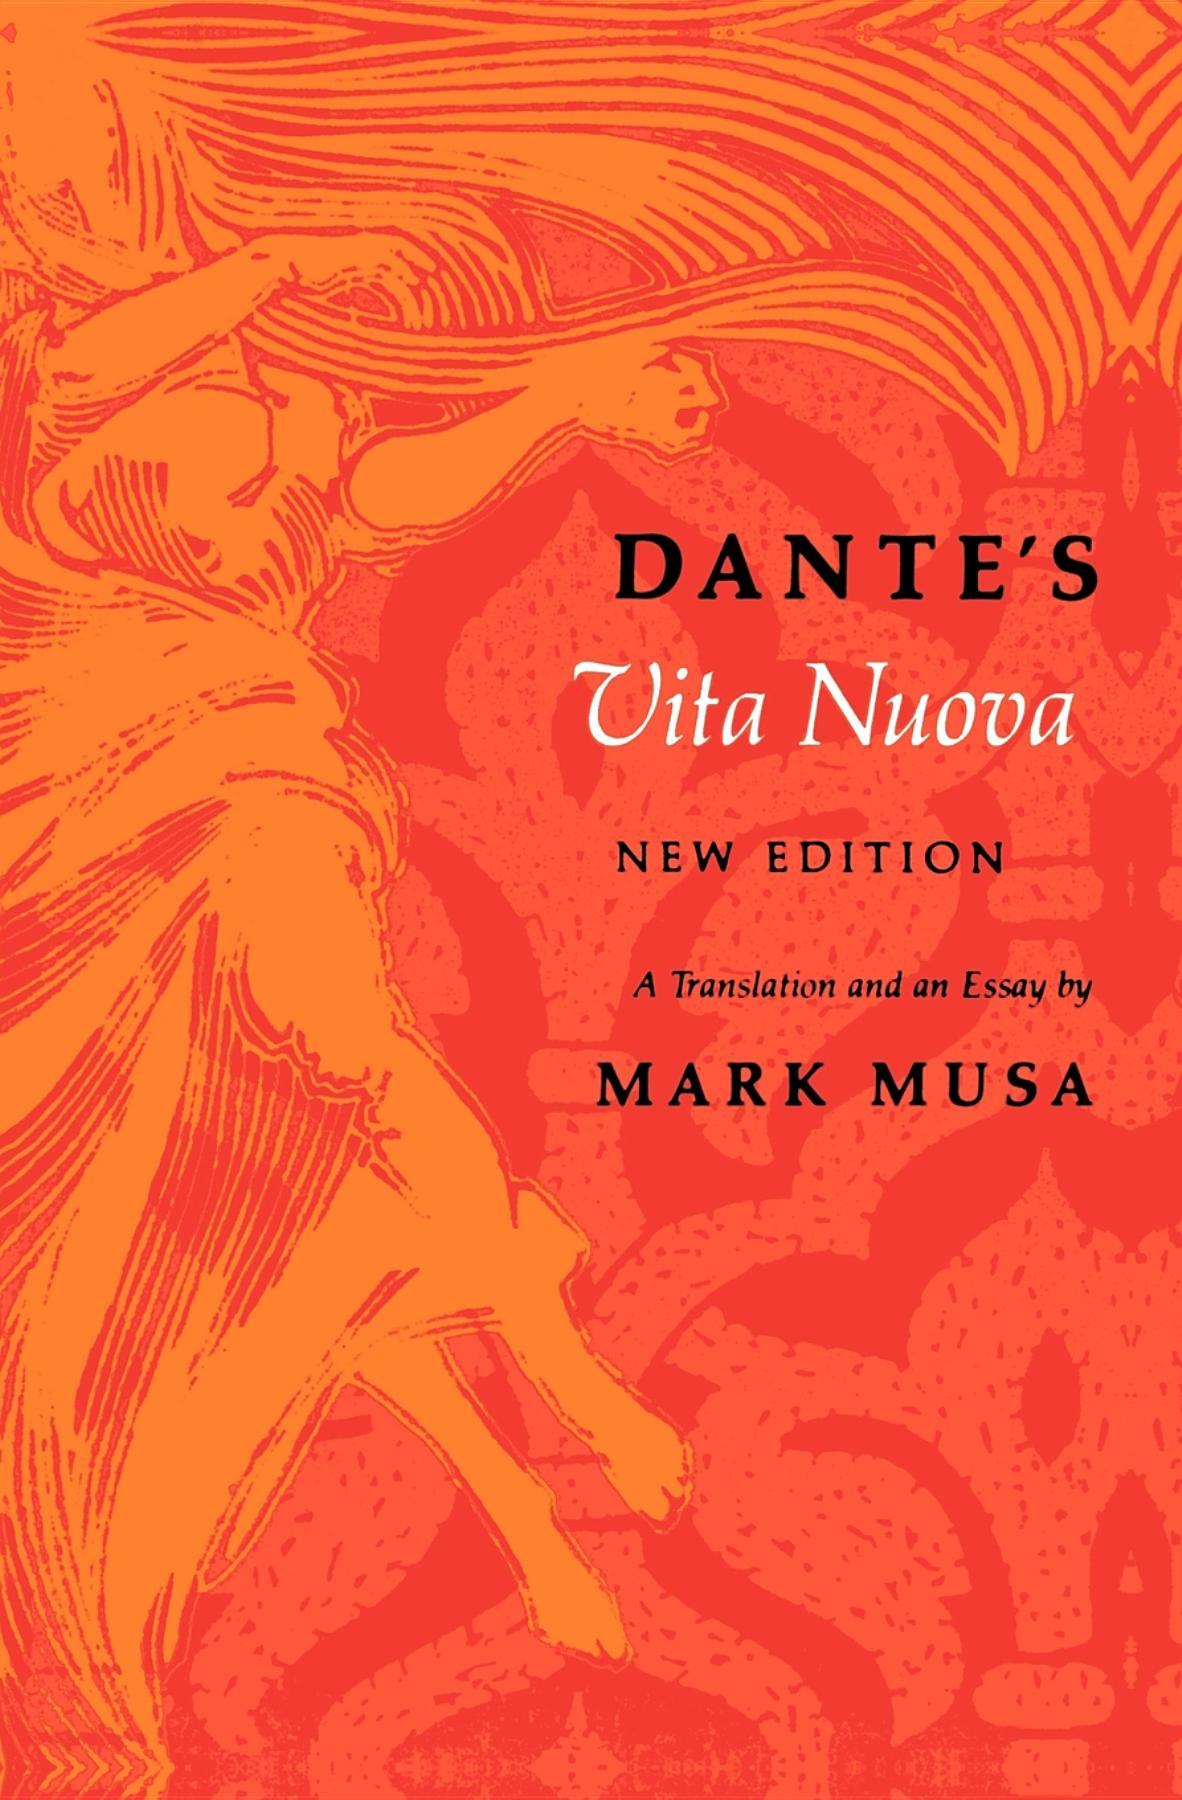 Dante s Vita Nuova, New Edition: A Translation and an Essay - Dante Alighieri